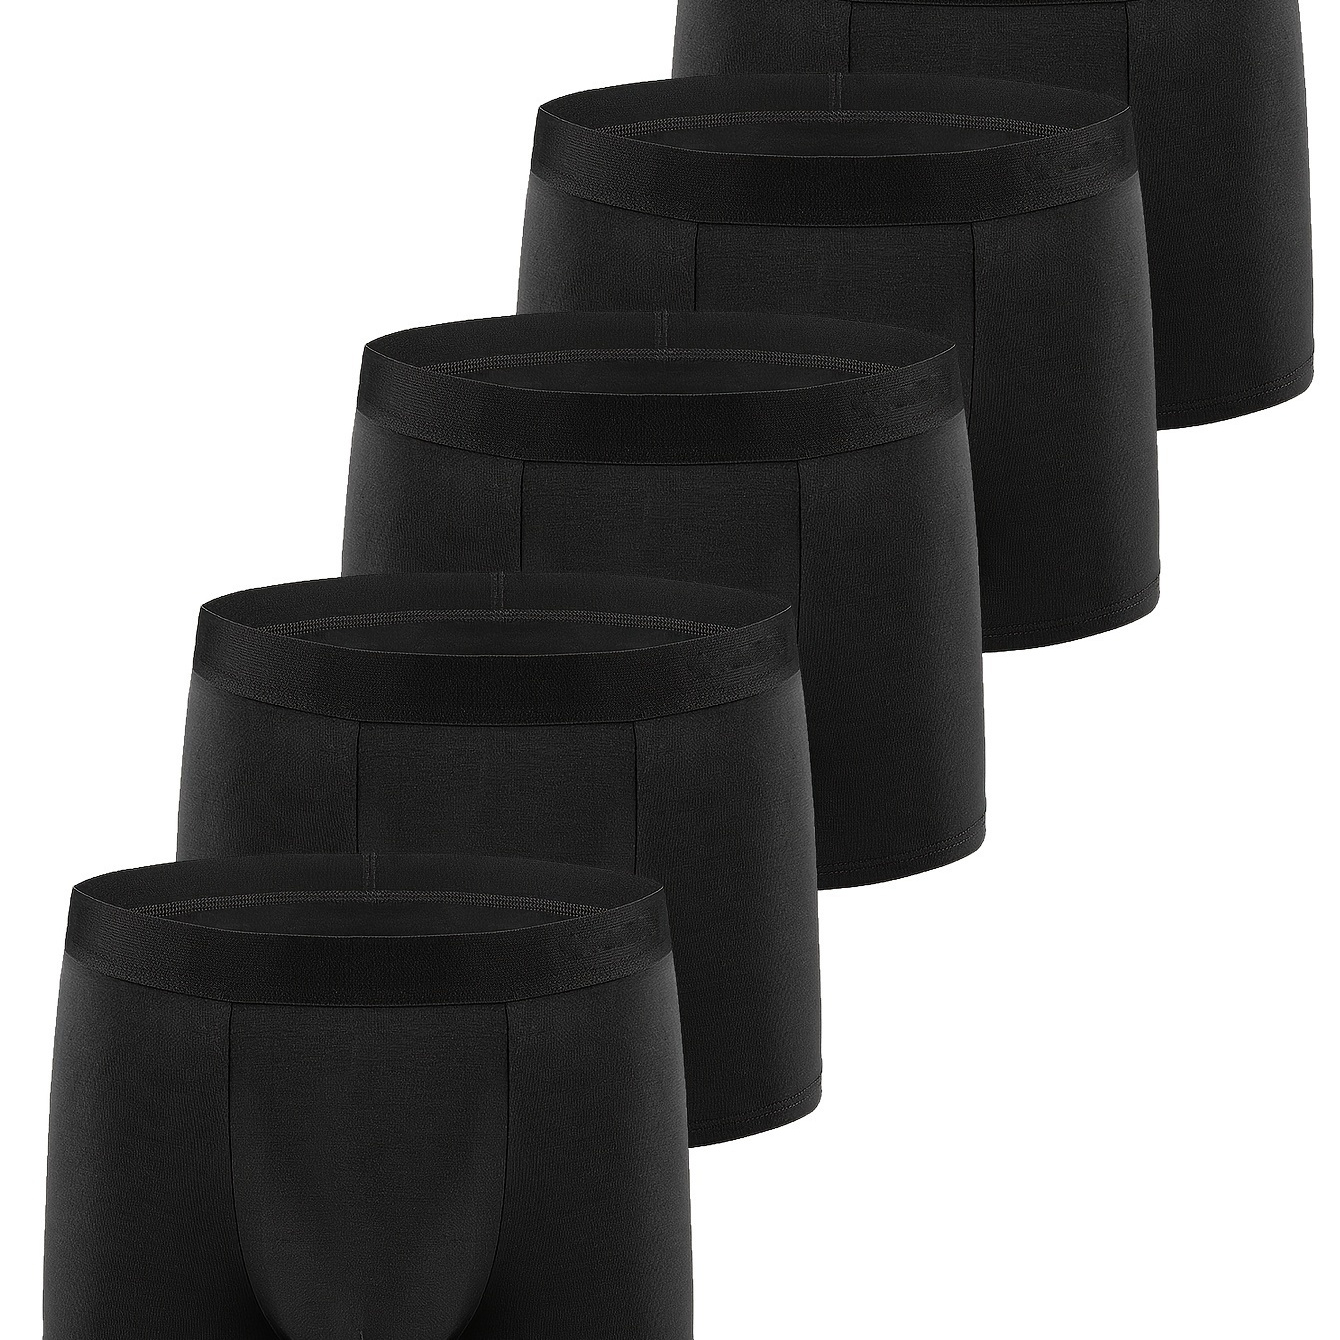 

5pcs Men's Cotton Breathable Comfy Stretchy Boxer Briefs Shorts, Casual Plain Color Boxer Trunks, Men's Trendy Underwear